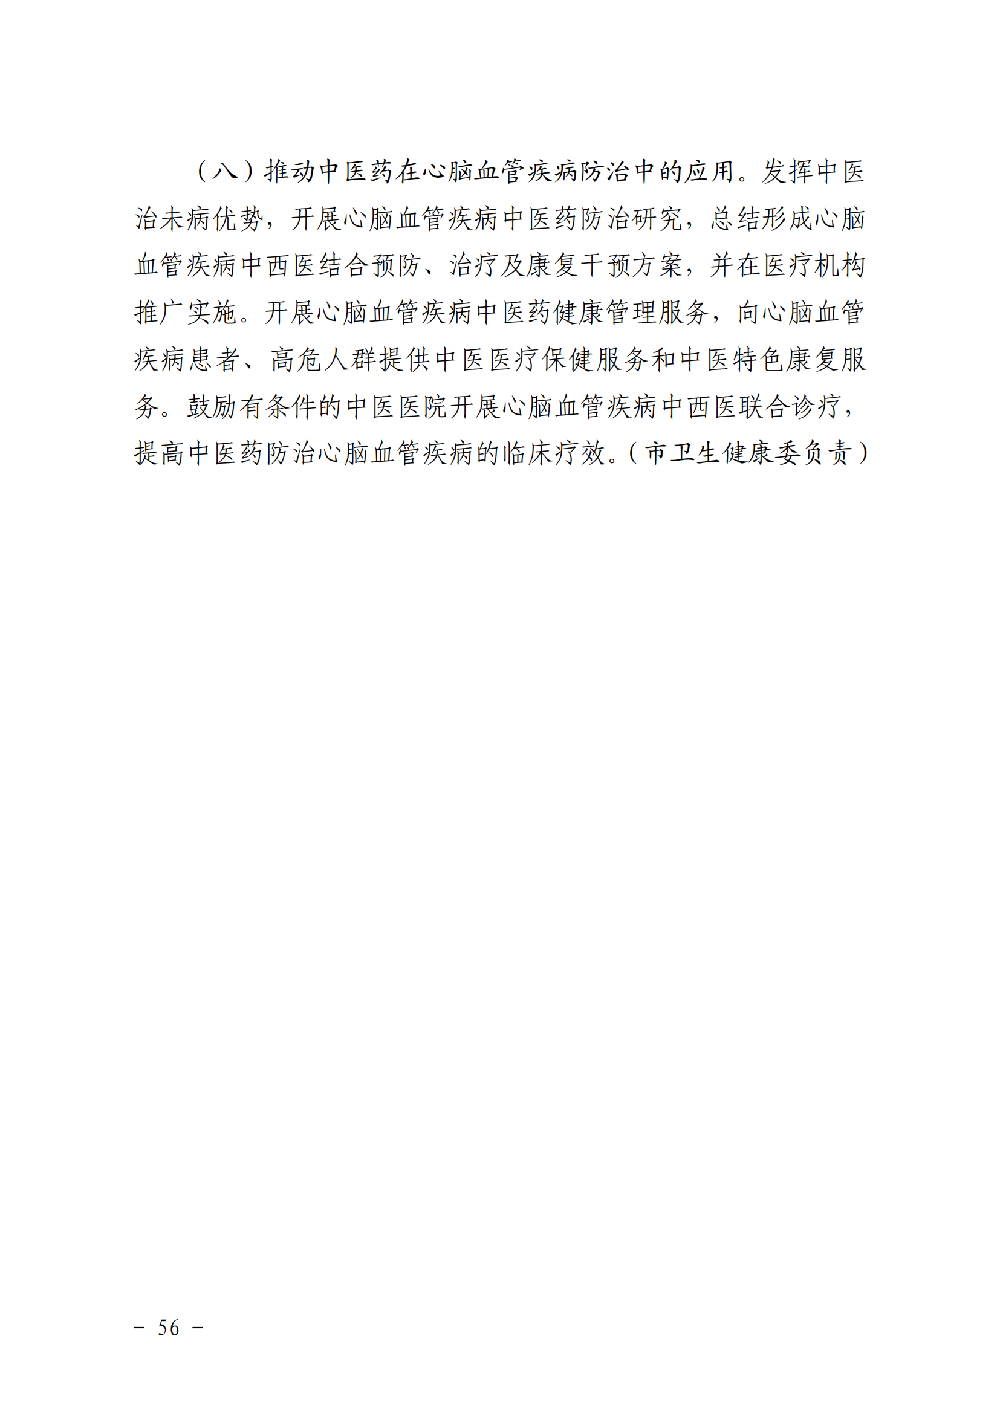 附件3：滨健推委发〔2020〕1号关于印发《健康滨州行动（2020-2022年）》的通知（印刷稿）_55.png